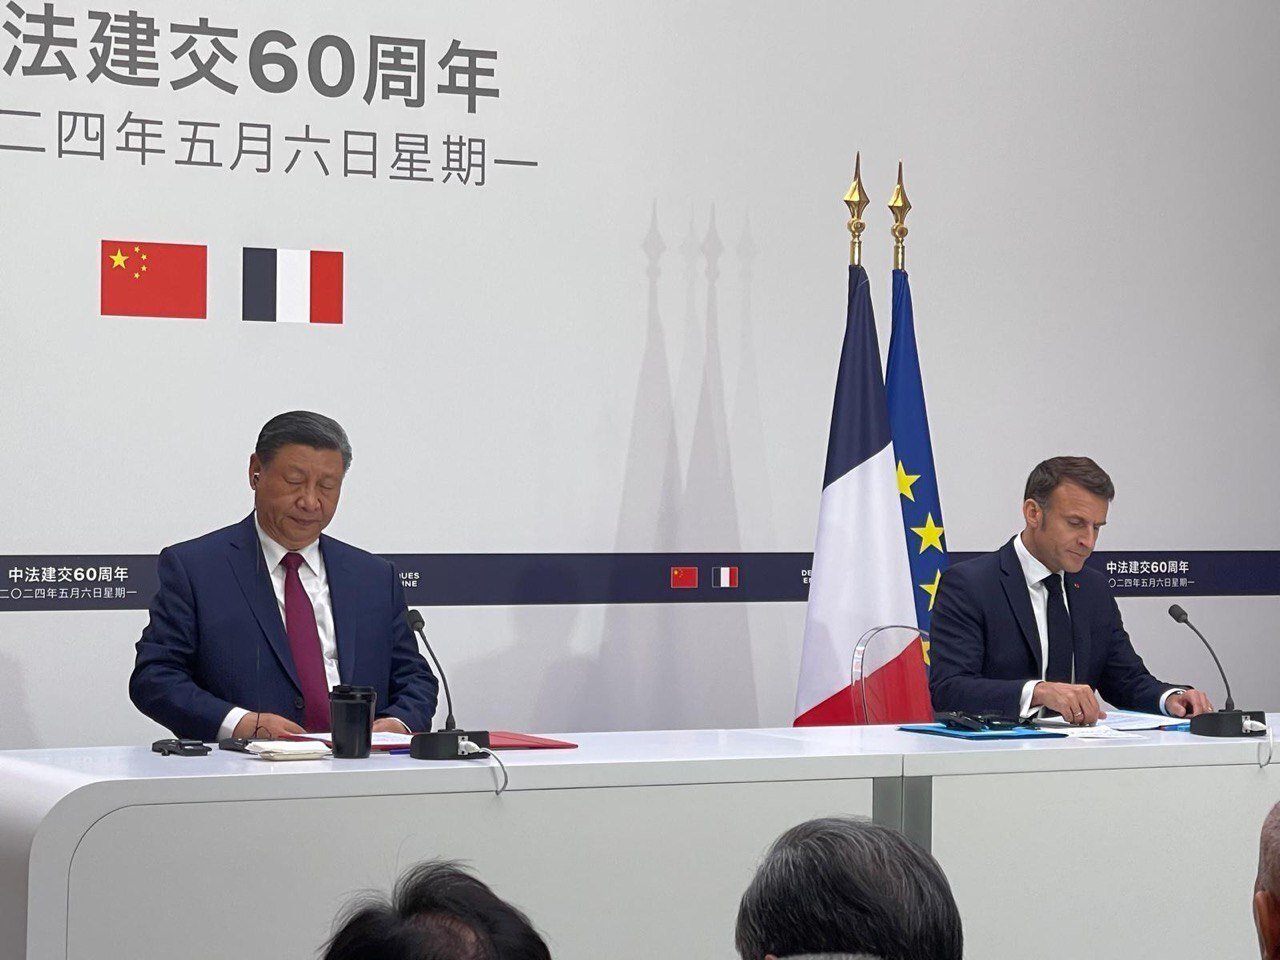 Xi Jinping intenta matizar el alineamiento atlantista de Europa